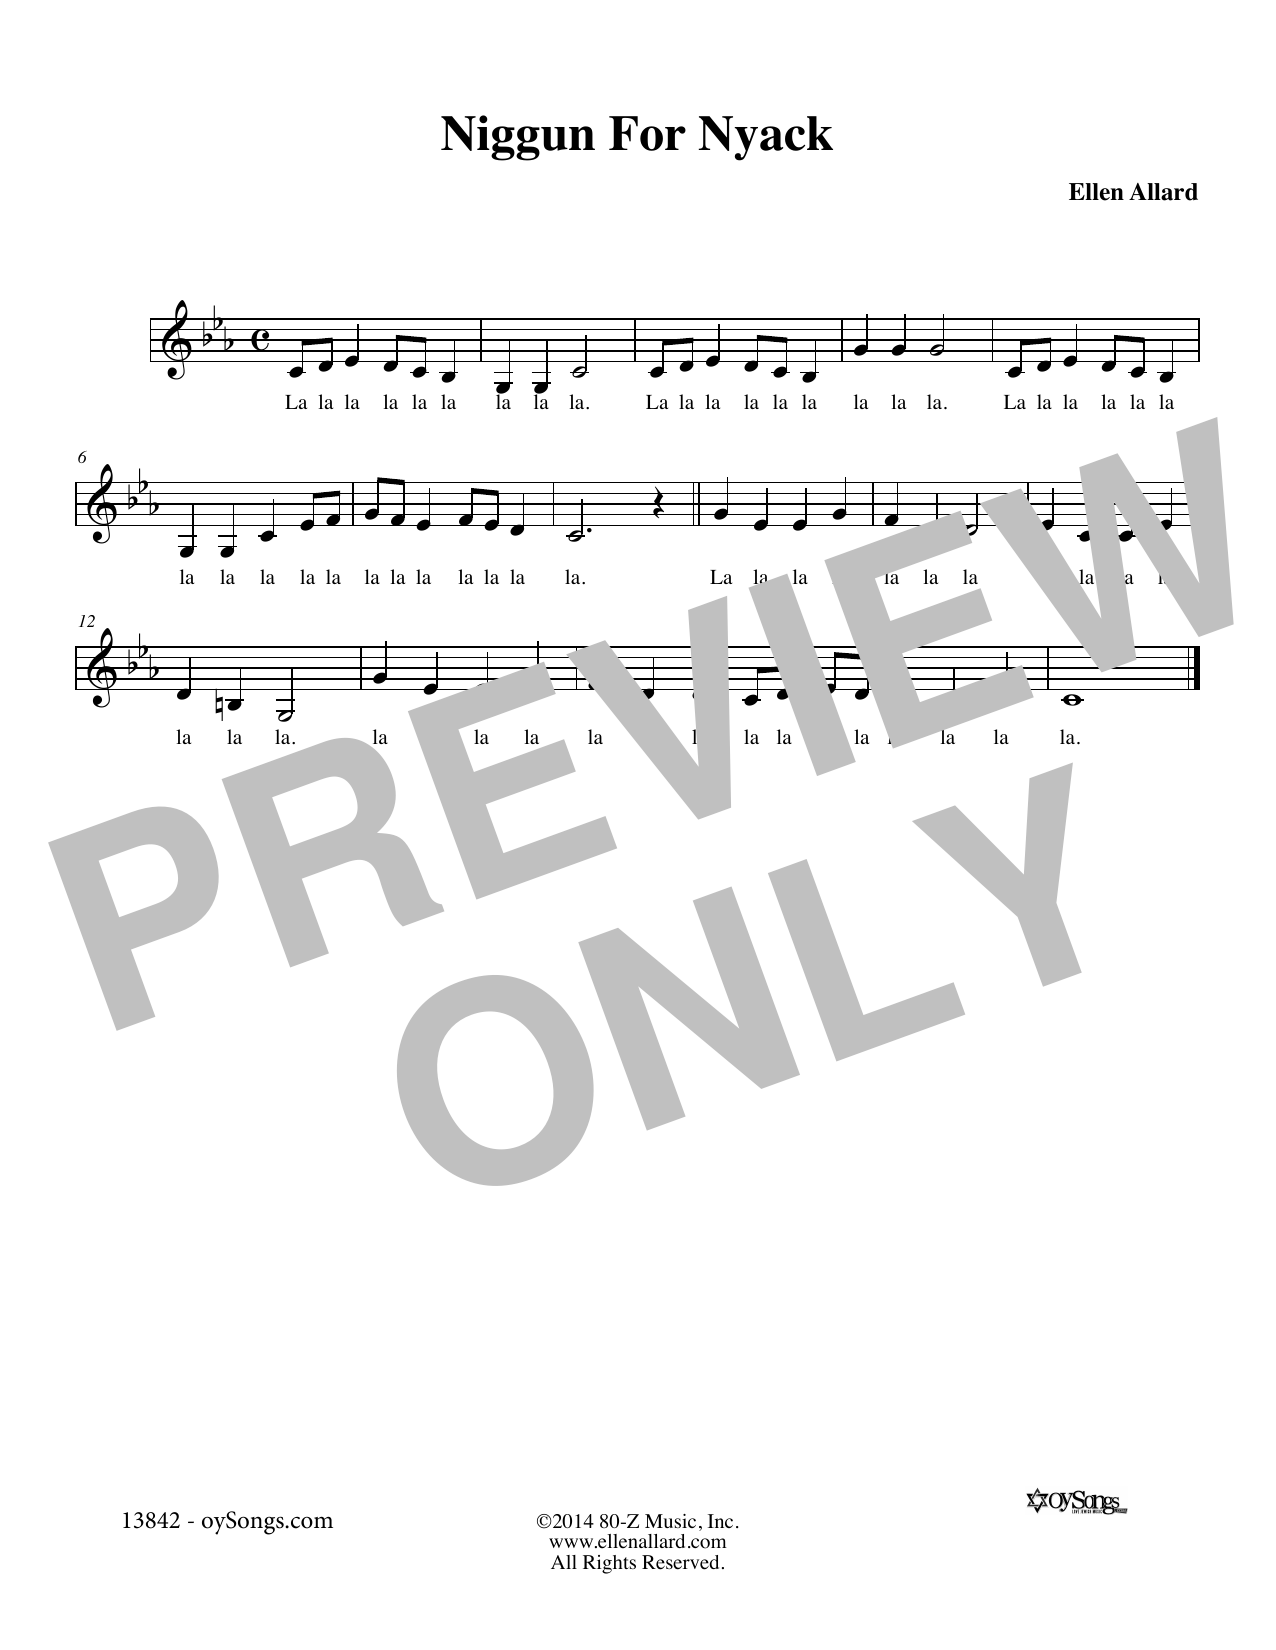 Ellen Allard Niggun For Nyack Sheet Music Notes & Chords for Melody Line, Lyrics & Chords - Download or Print PDF